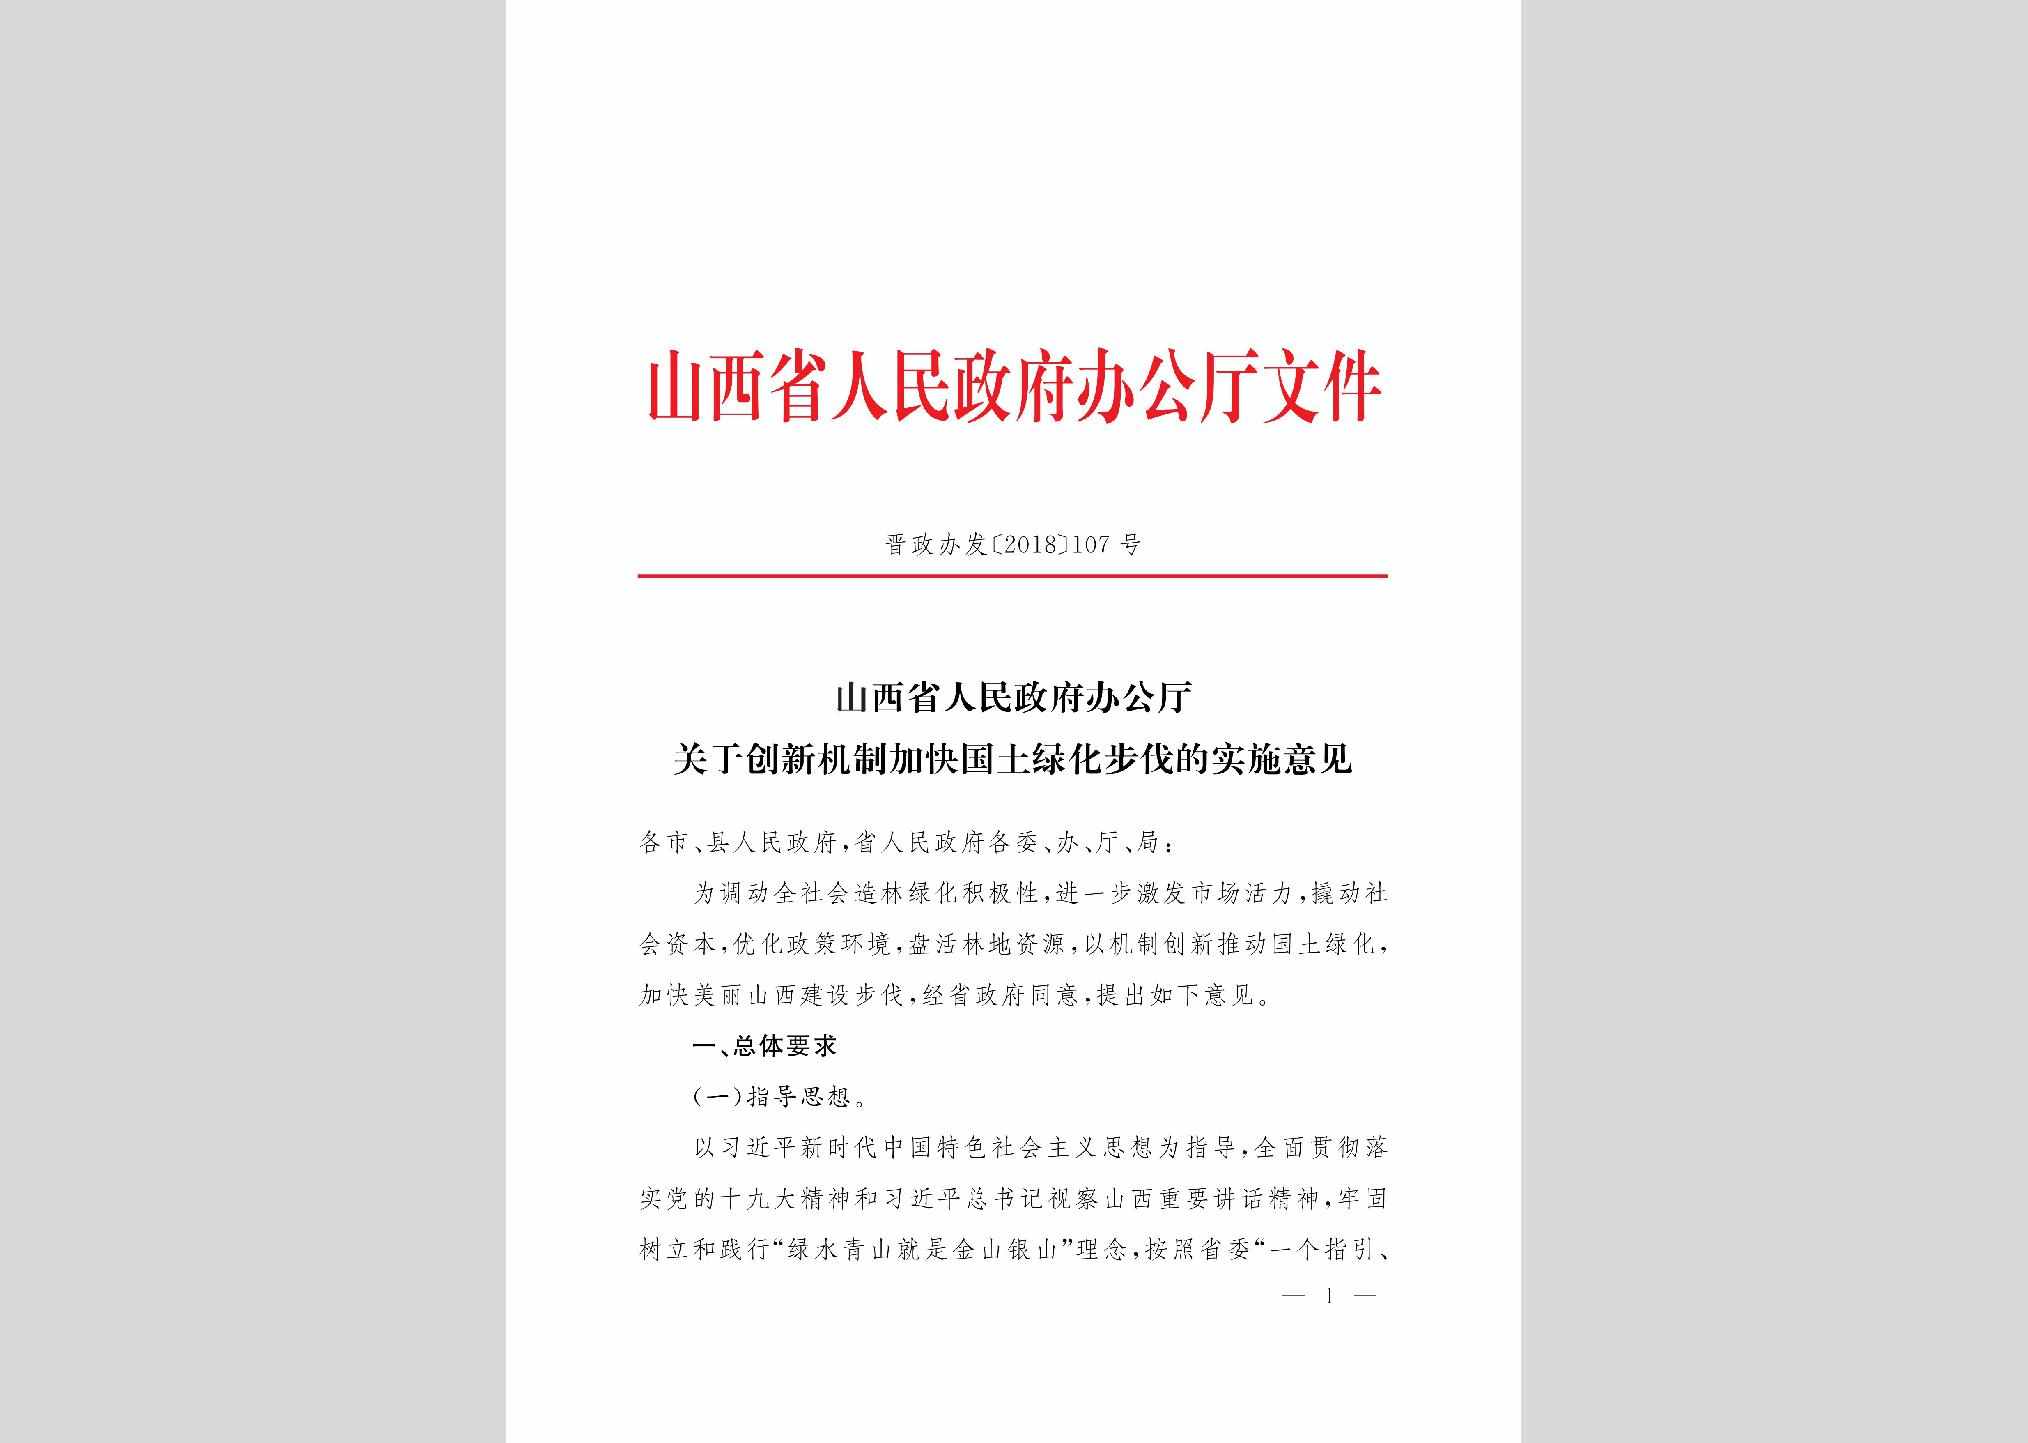 晋政办发[2018]107号：山西省人民政府办公厅关于创新机制加快国土绿化步伐的实施意见